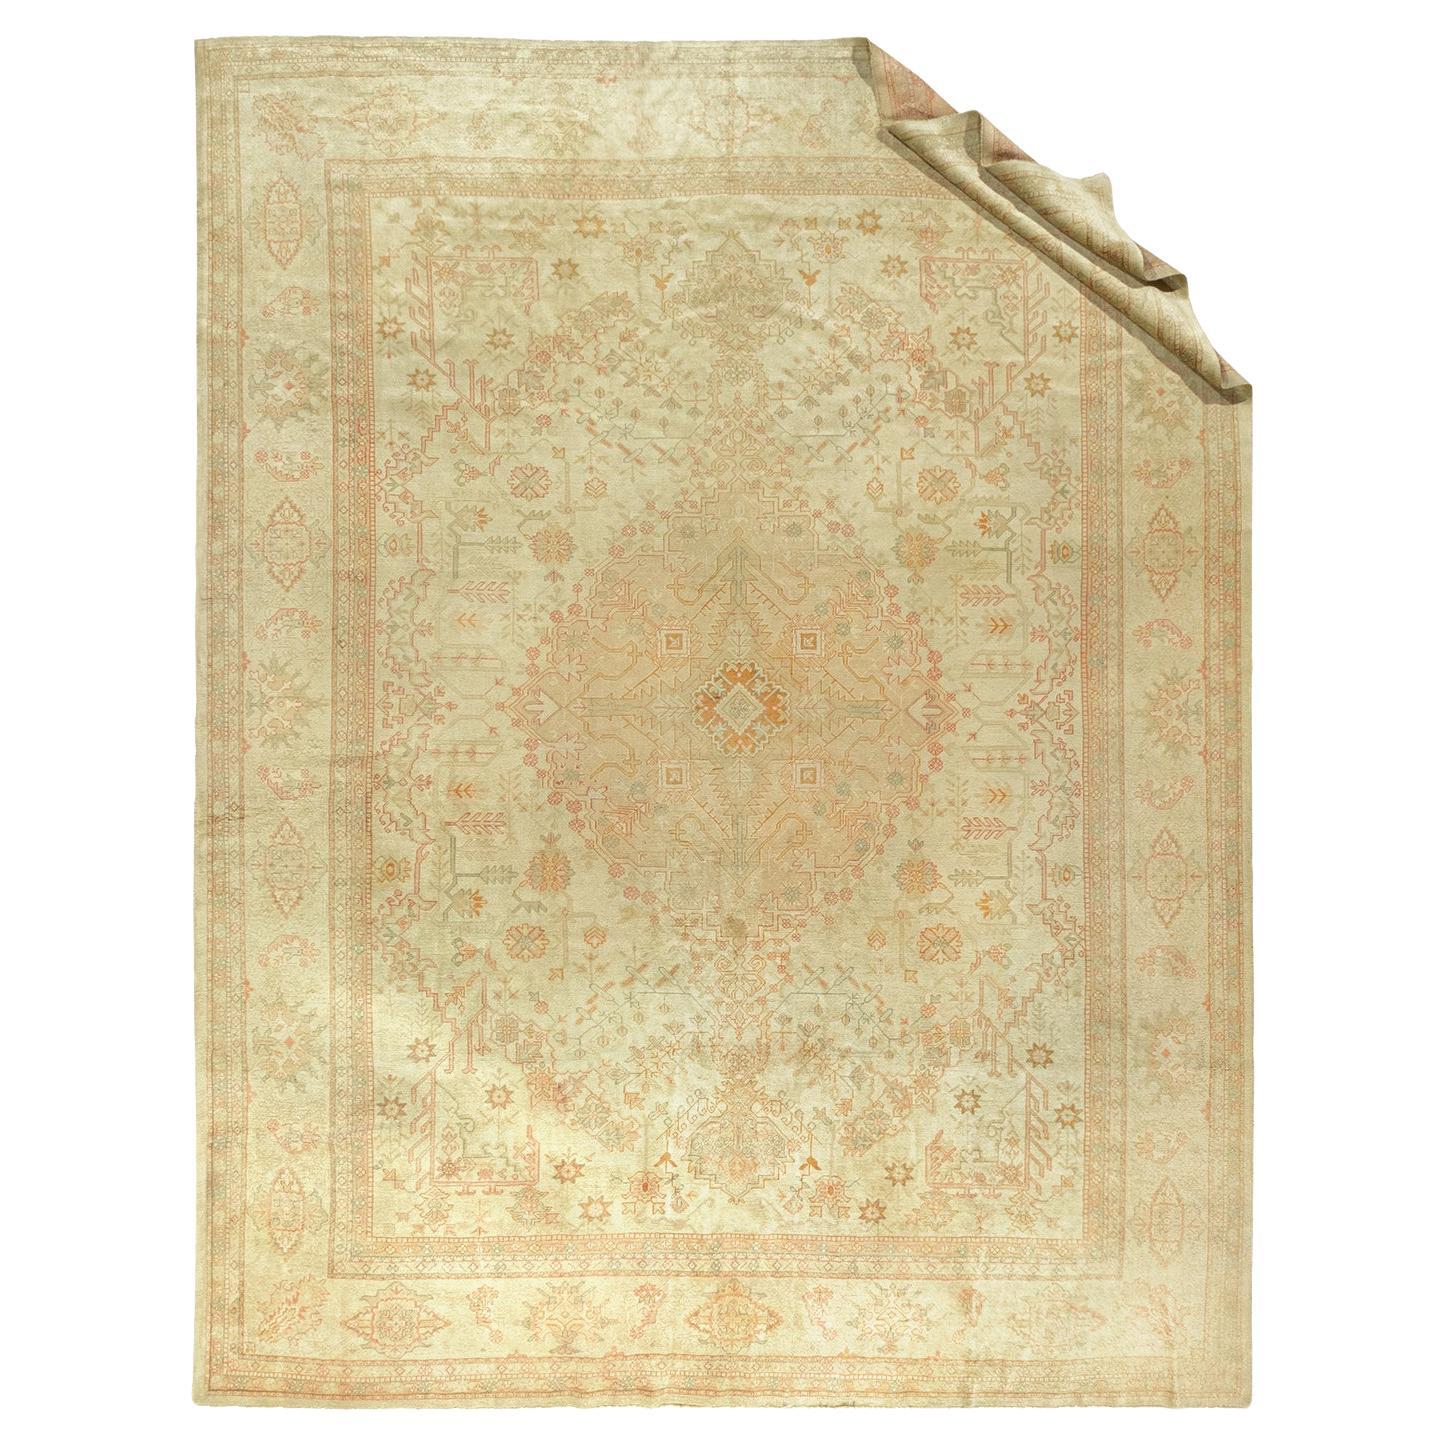 Antiker türkischer Oushak-Teppich, 12'3 x 15'10 cm, antik